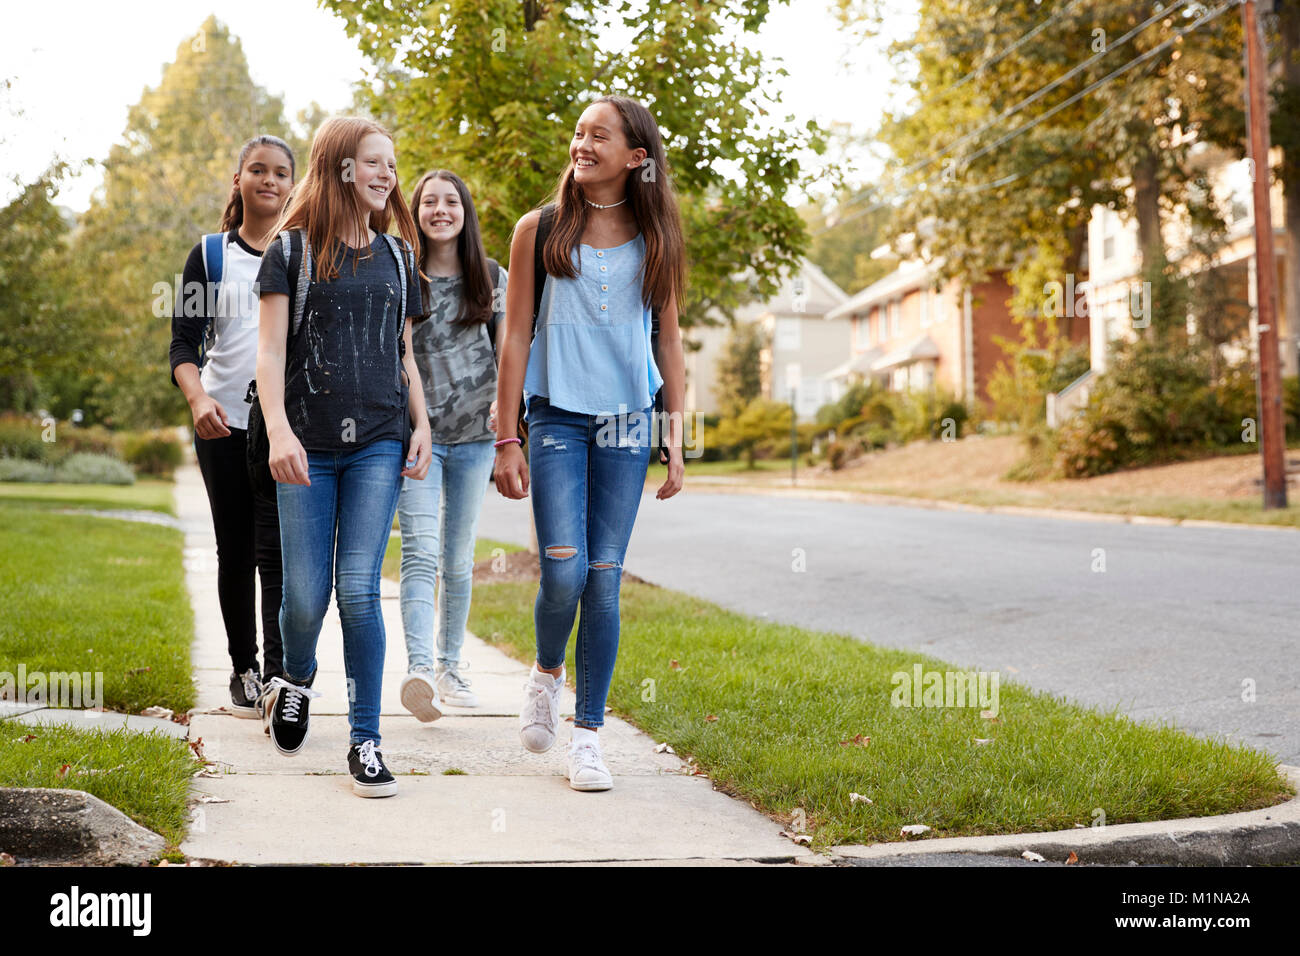 Quatre jeunes filles de l'adolescence à l'école à pied ensemble, front view Banque D'Images